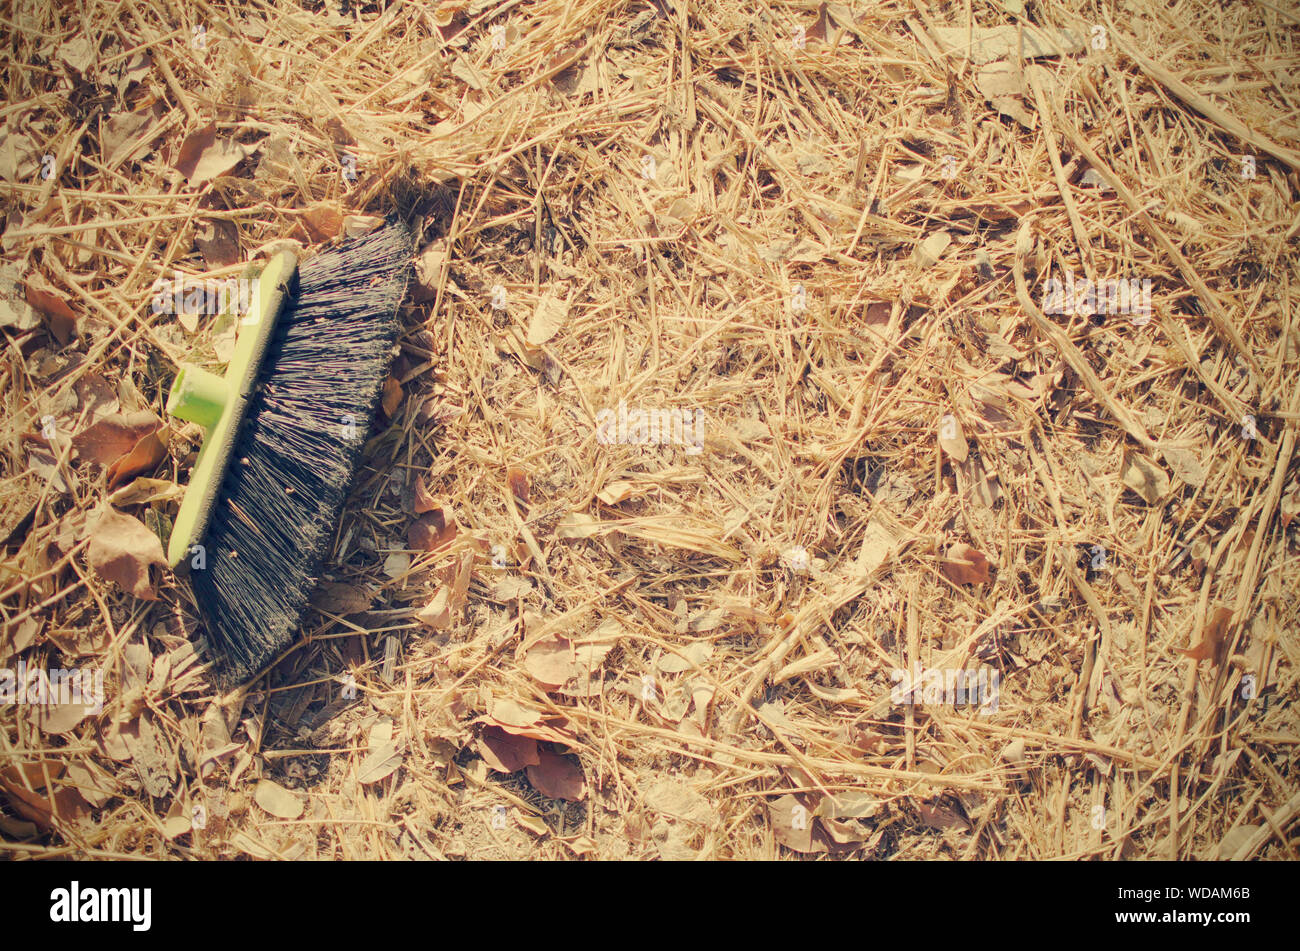 Un cepillo de barredora con plástico tumbado en el suelo exterior (junto a un contenedor) Foto de stock